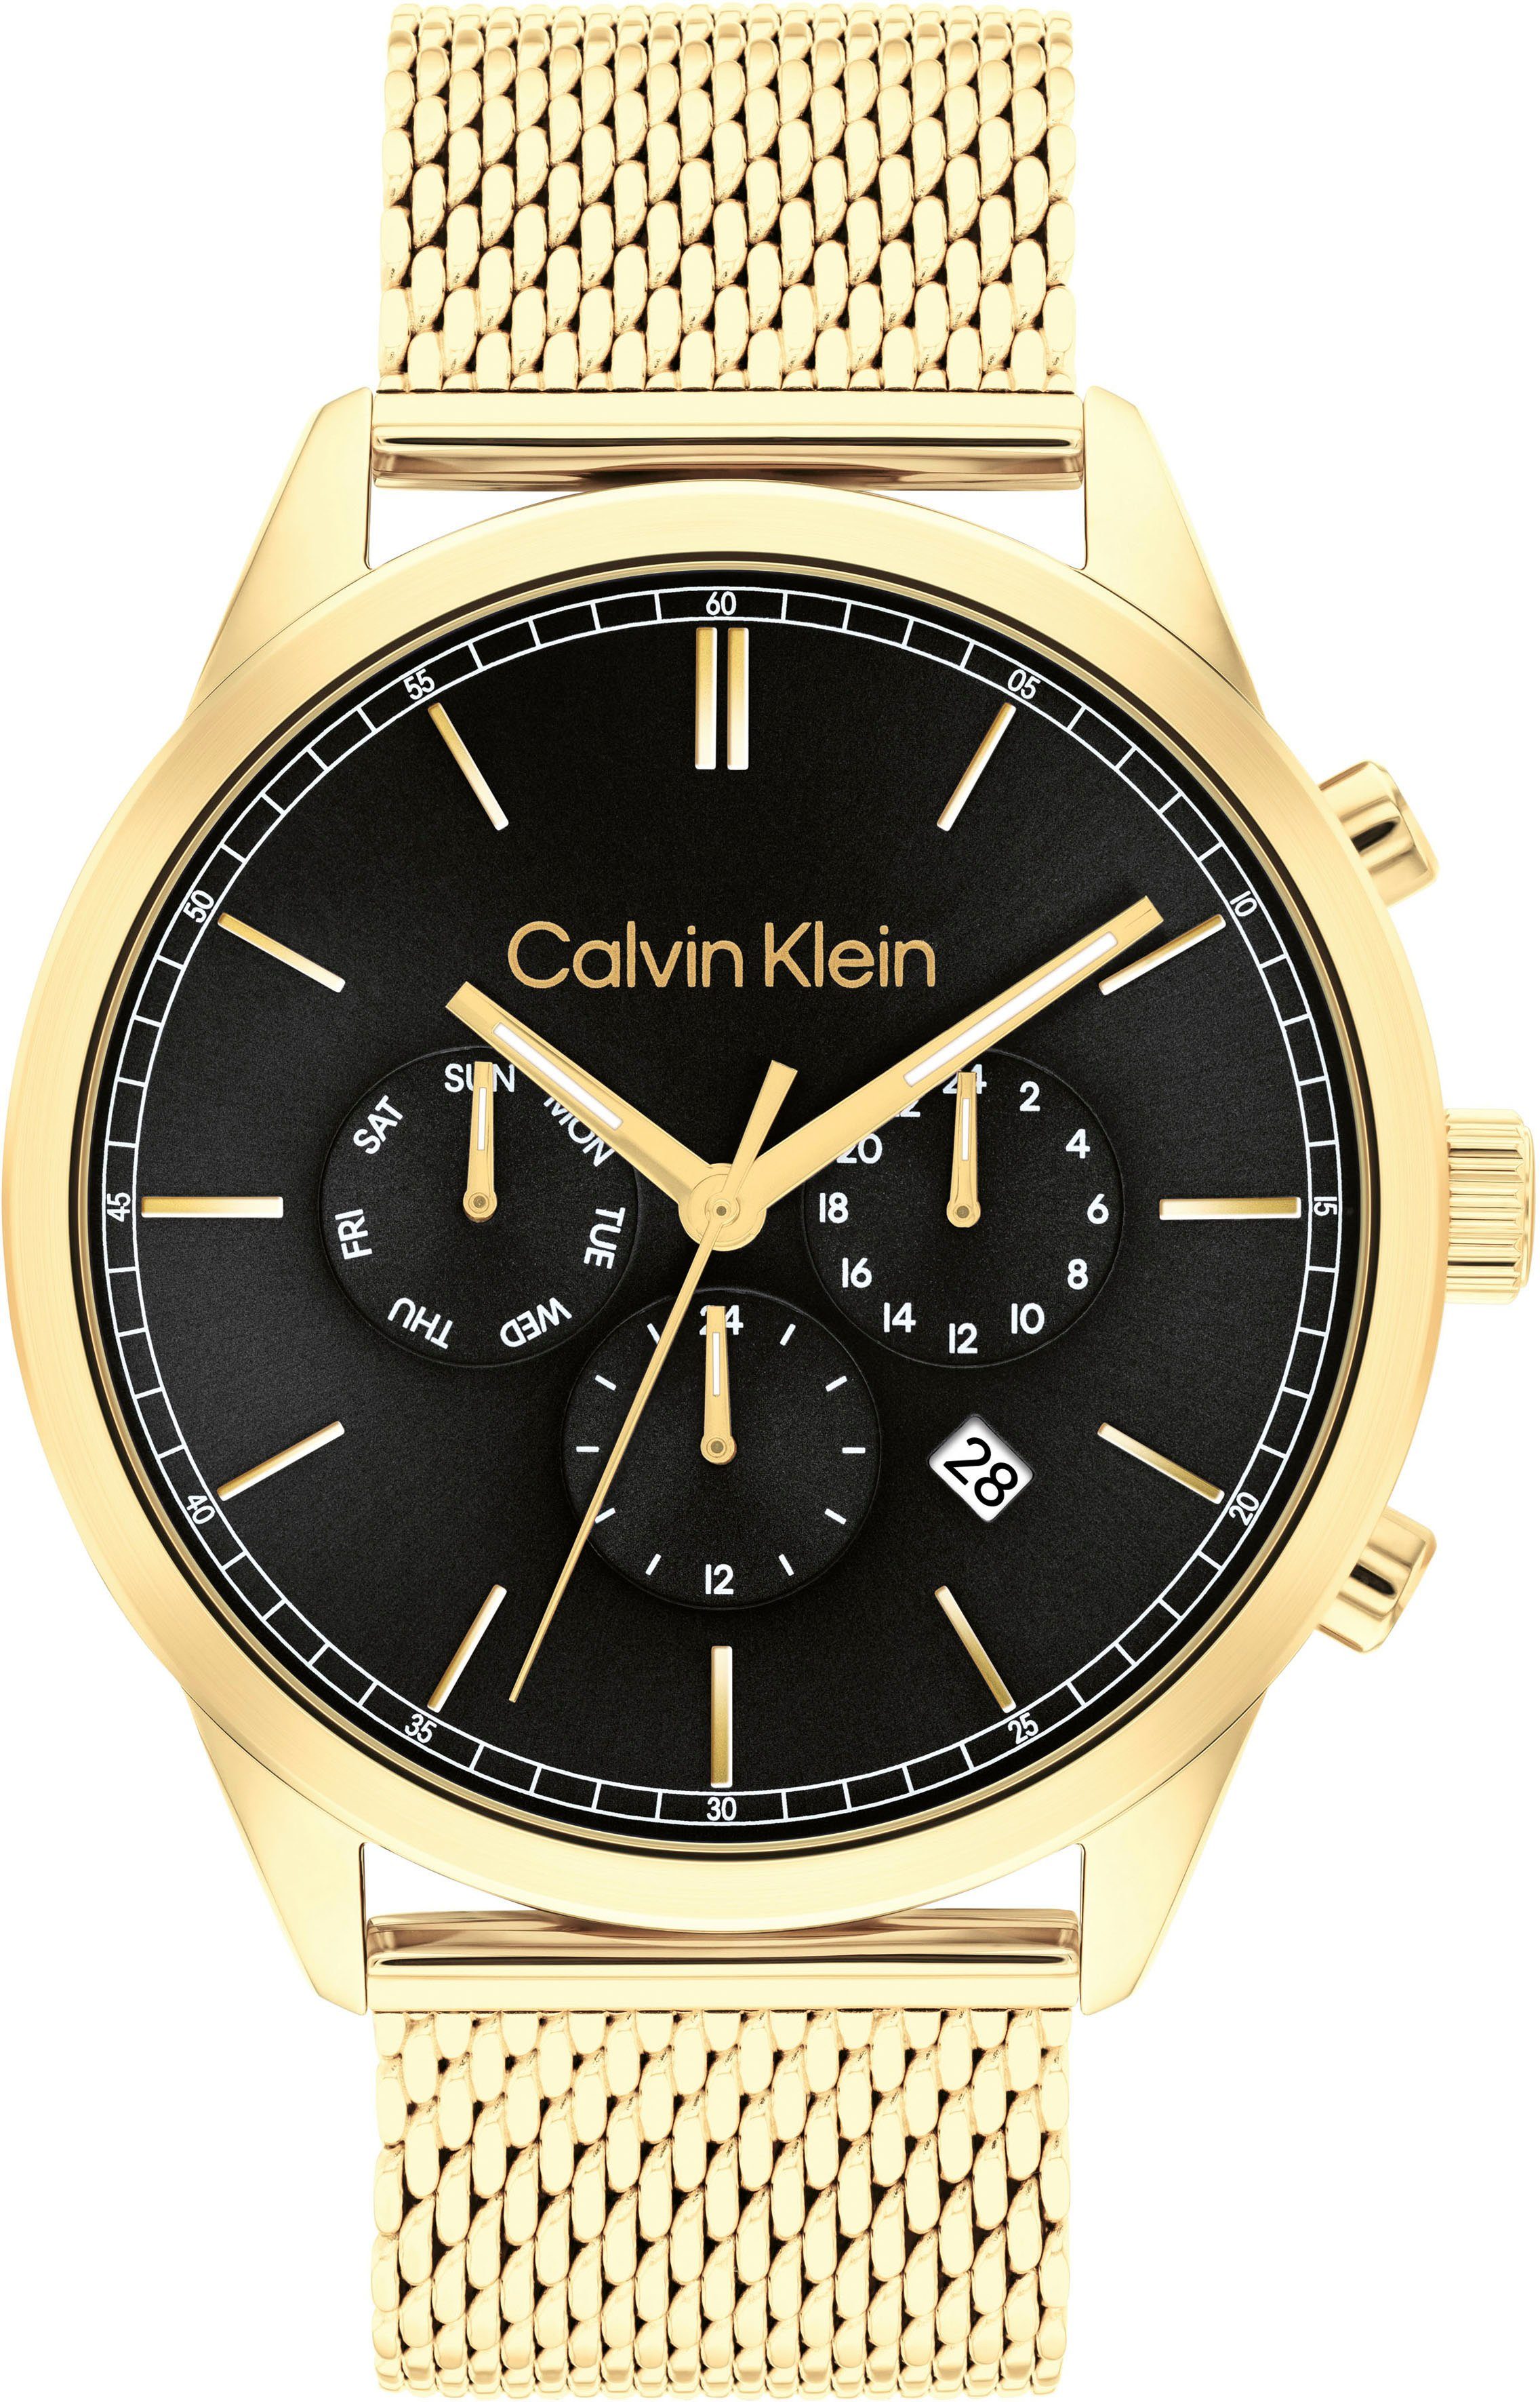 Calvin Klein Multifunktionsuhr 25200375, Quarzuhr, Armbanduhr, Herrenuhr, Datum, 12/24-Stunden-Anzeige